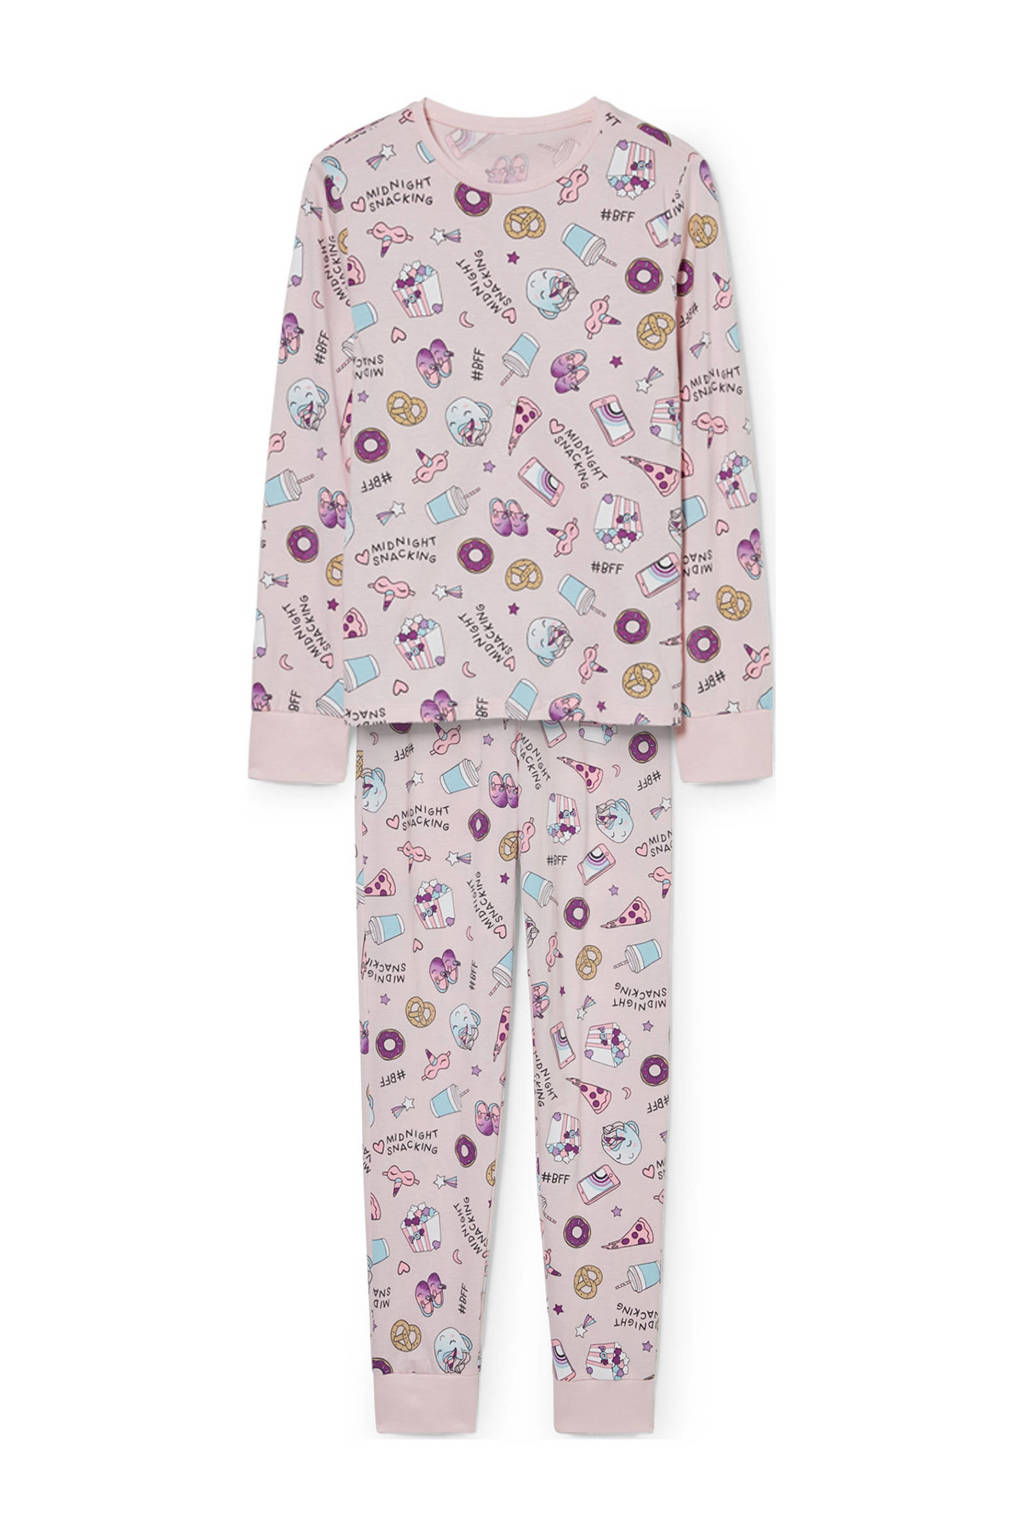 C&A pyjama met all over print roze